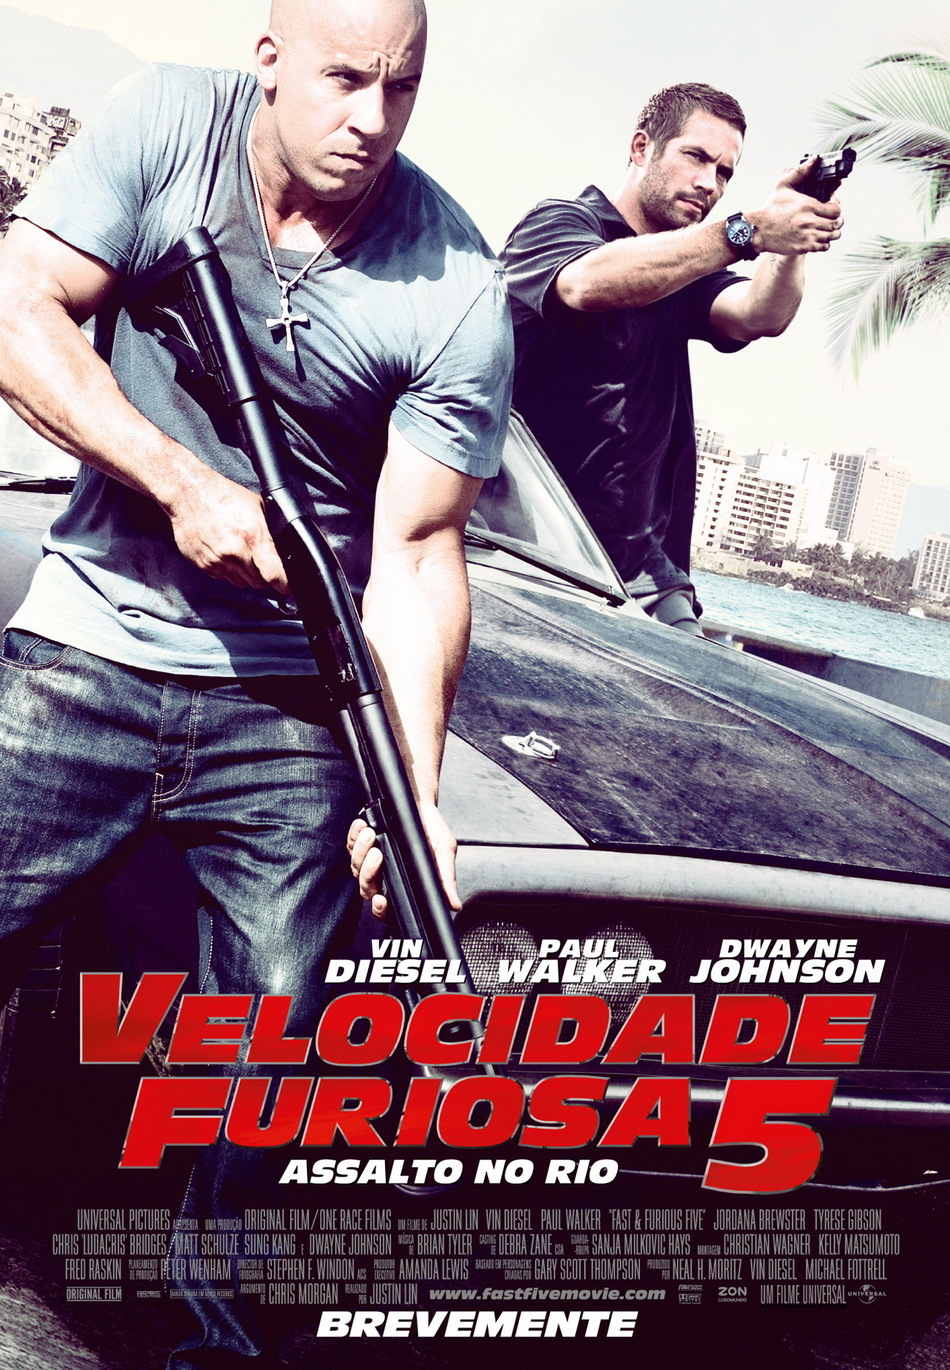 Velocidade Furiosa 5 foi o filme mais pirateado em 2011 - Fora de